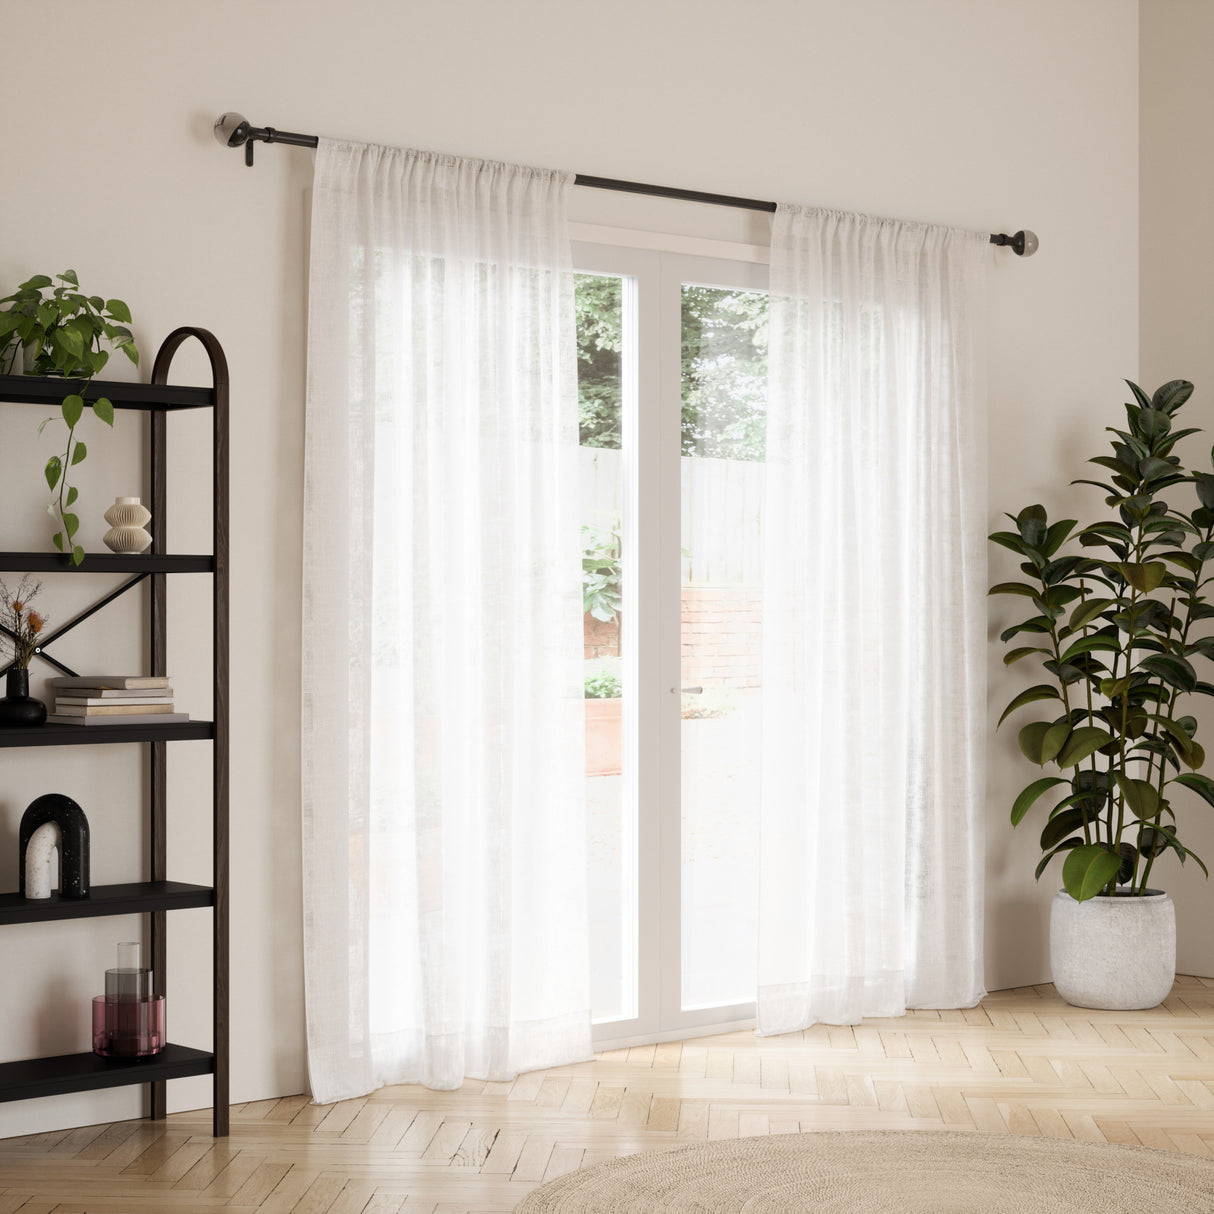 Single Curtain Rods | color: Eco-Friendly Matte-Black | size: 42-120" (107-305 cm) | diameter: 1" (2.5 cm)